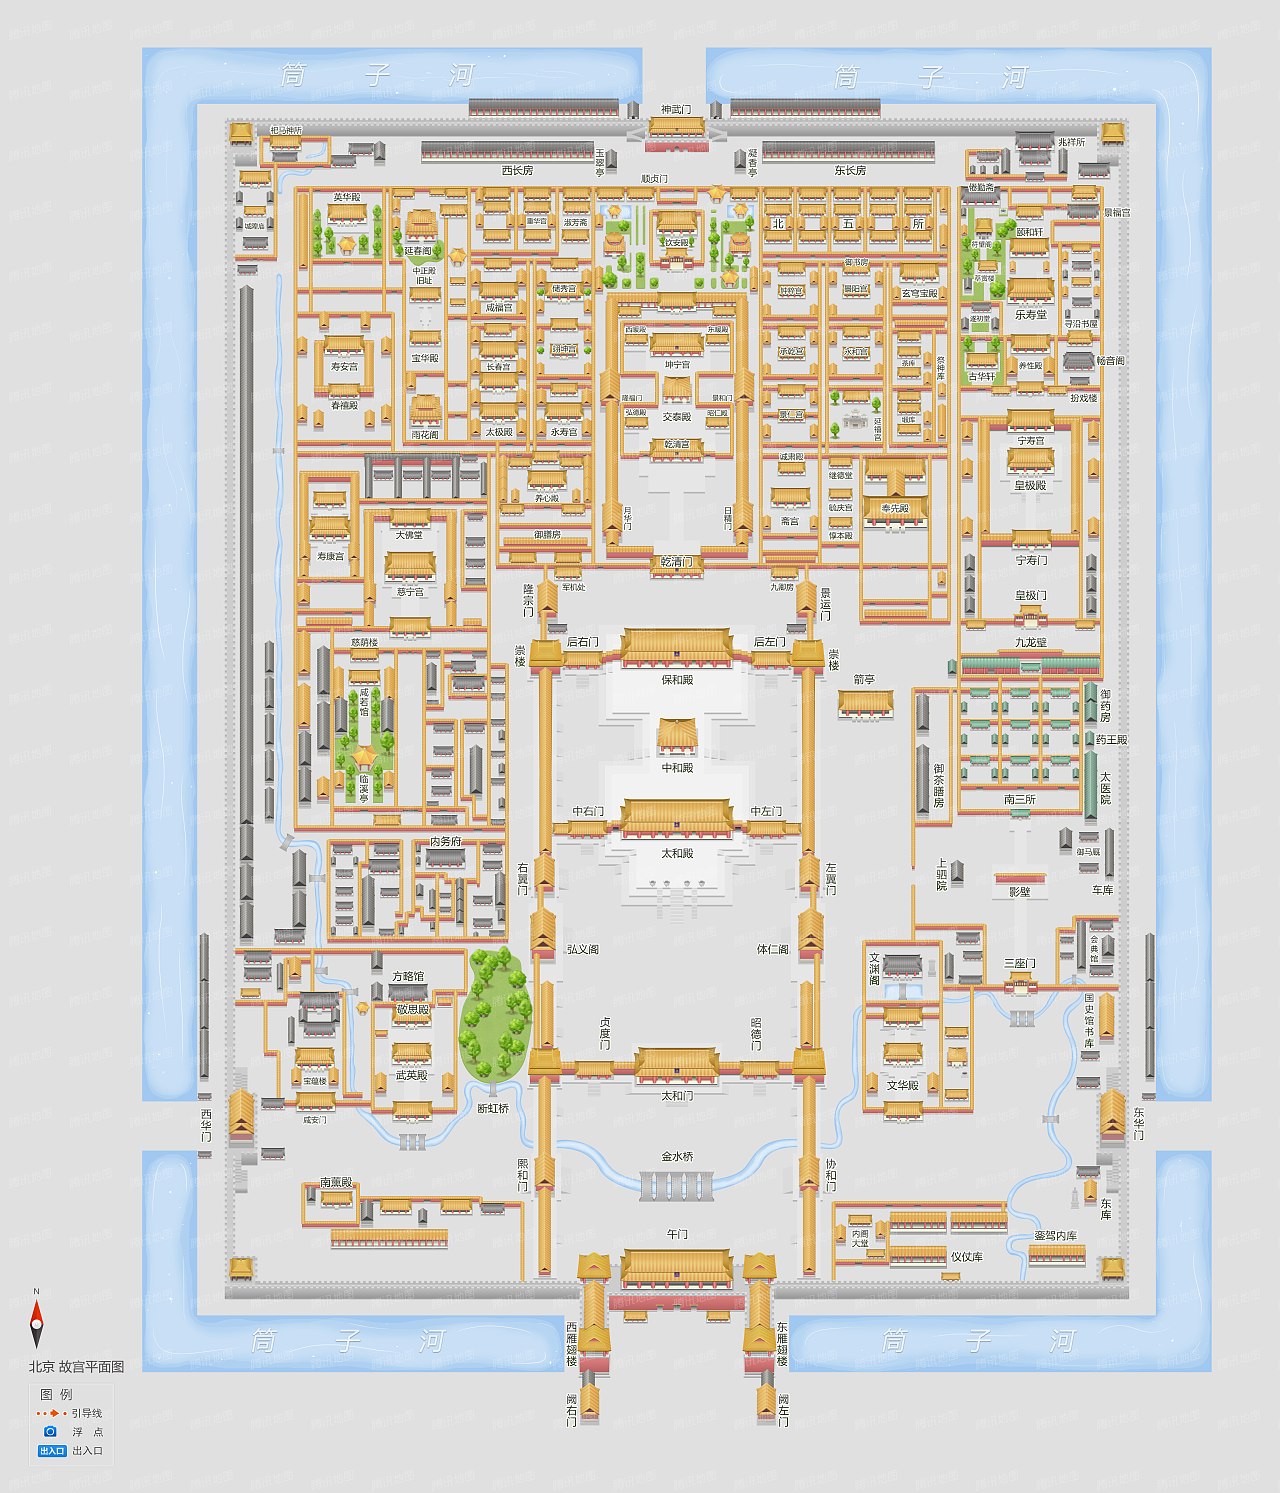 腾讯地图手绘平面图样例——故宫博物院